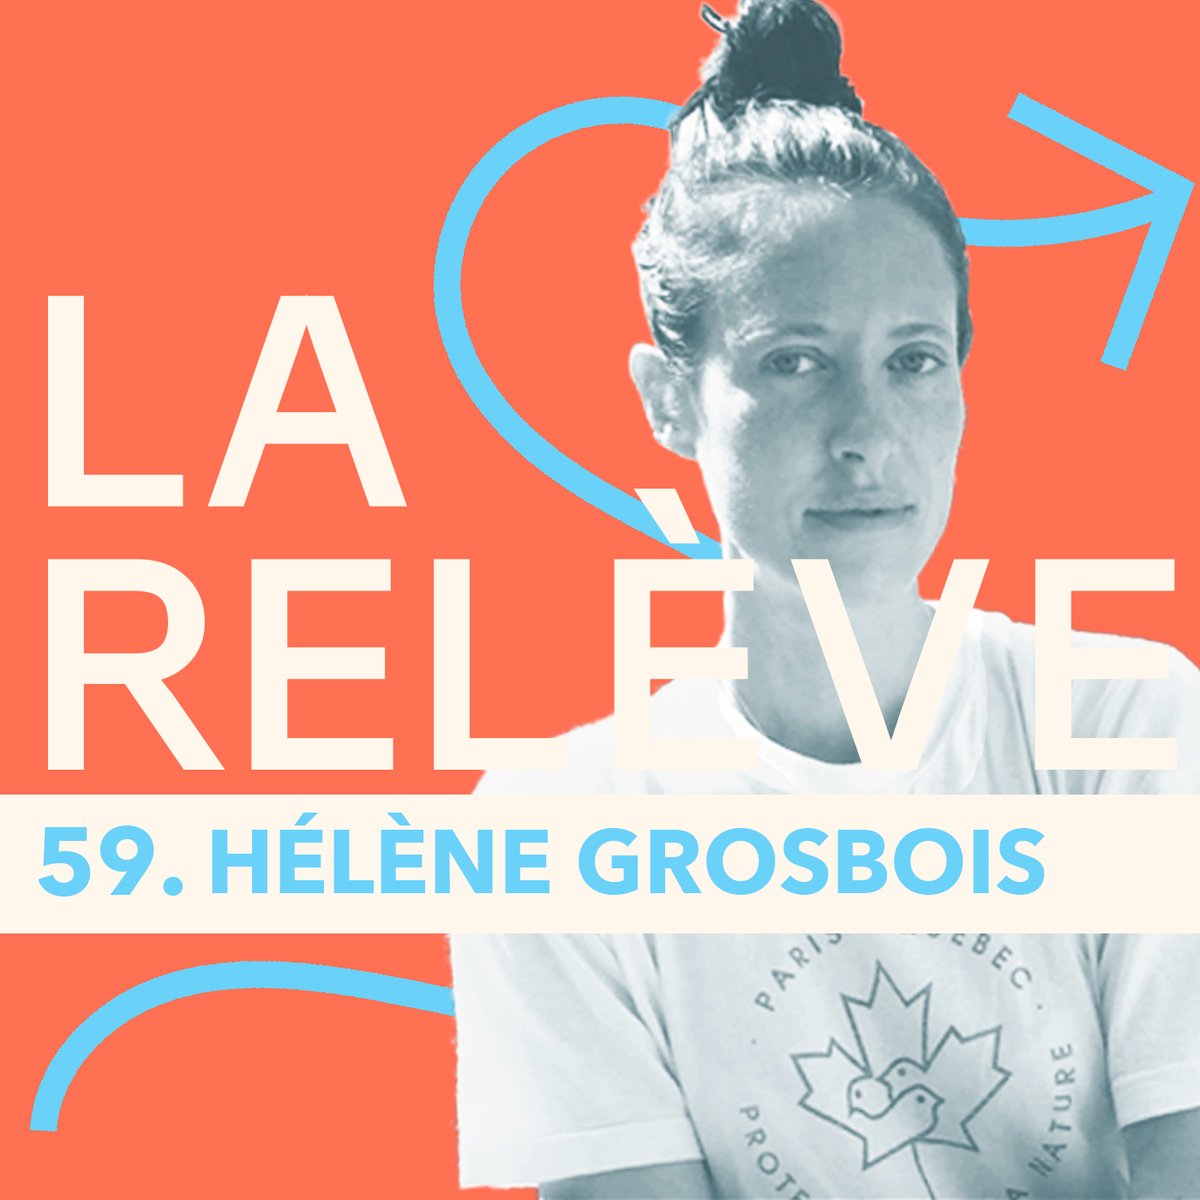 Pour le nouvel épisode du #podcast La Relève, @thiblam reçoit Hélène Grosbois, #activiste environnementale passionnée et #engagée. Pour écouter l'épisode : audmns.com/YeIMkDV #écologie #environnement